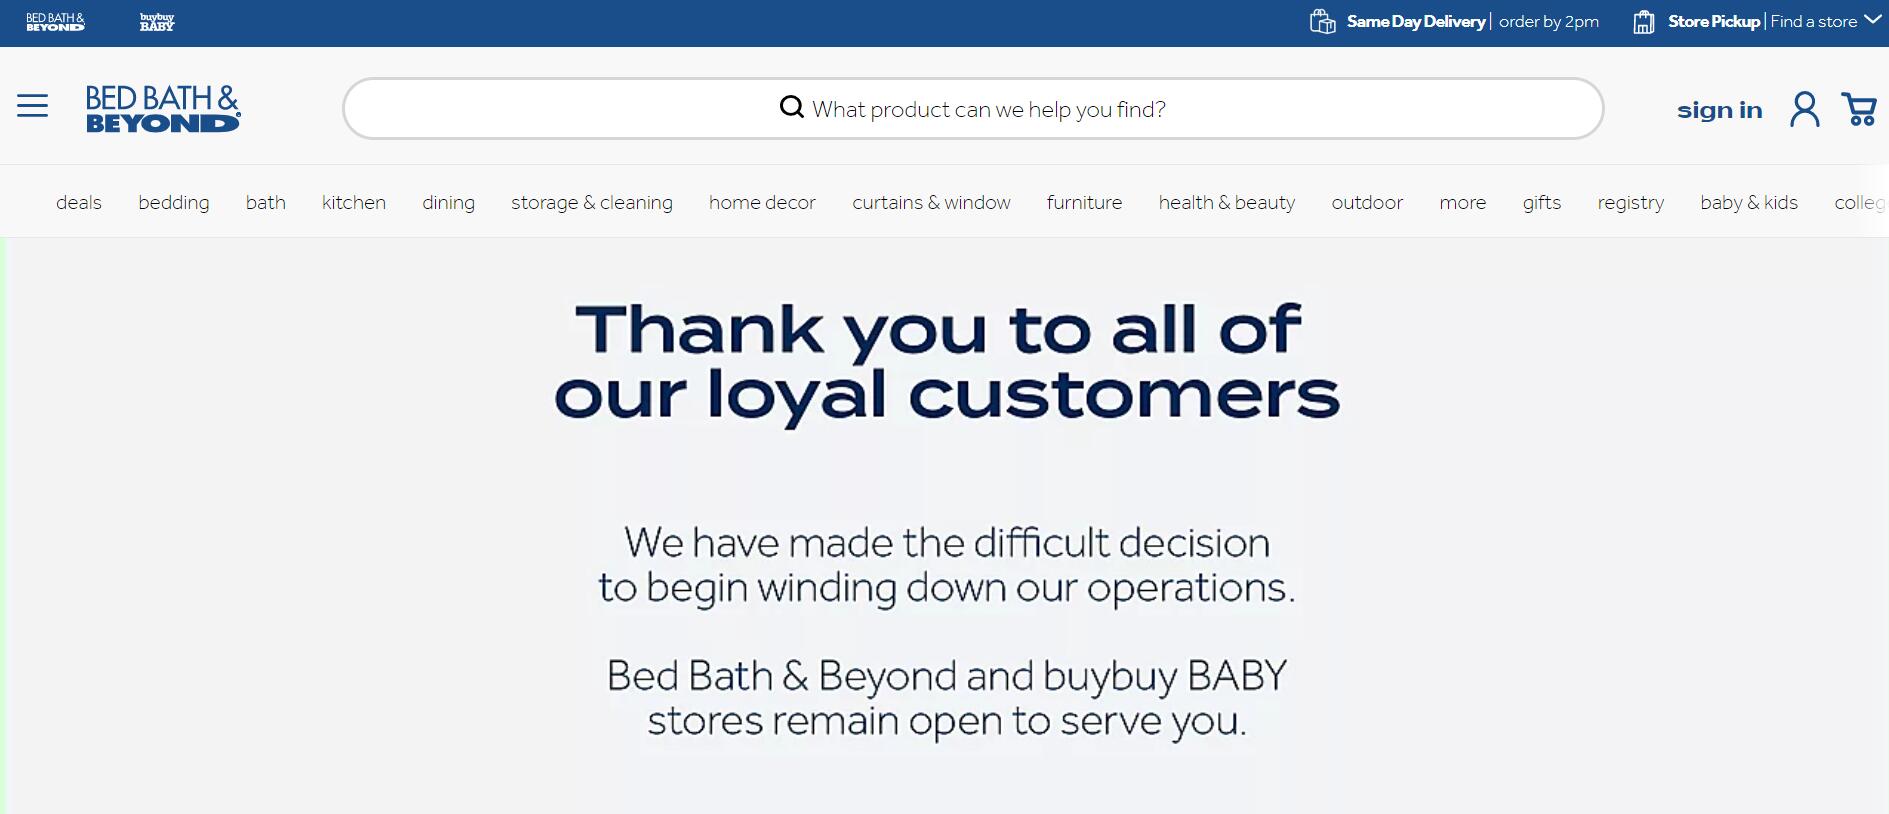 多次自救失败，美国家居用品零售商 Bed Bath & Beyond 申请破产保护及资产拍卖